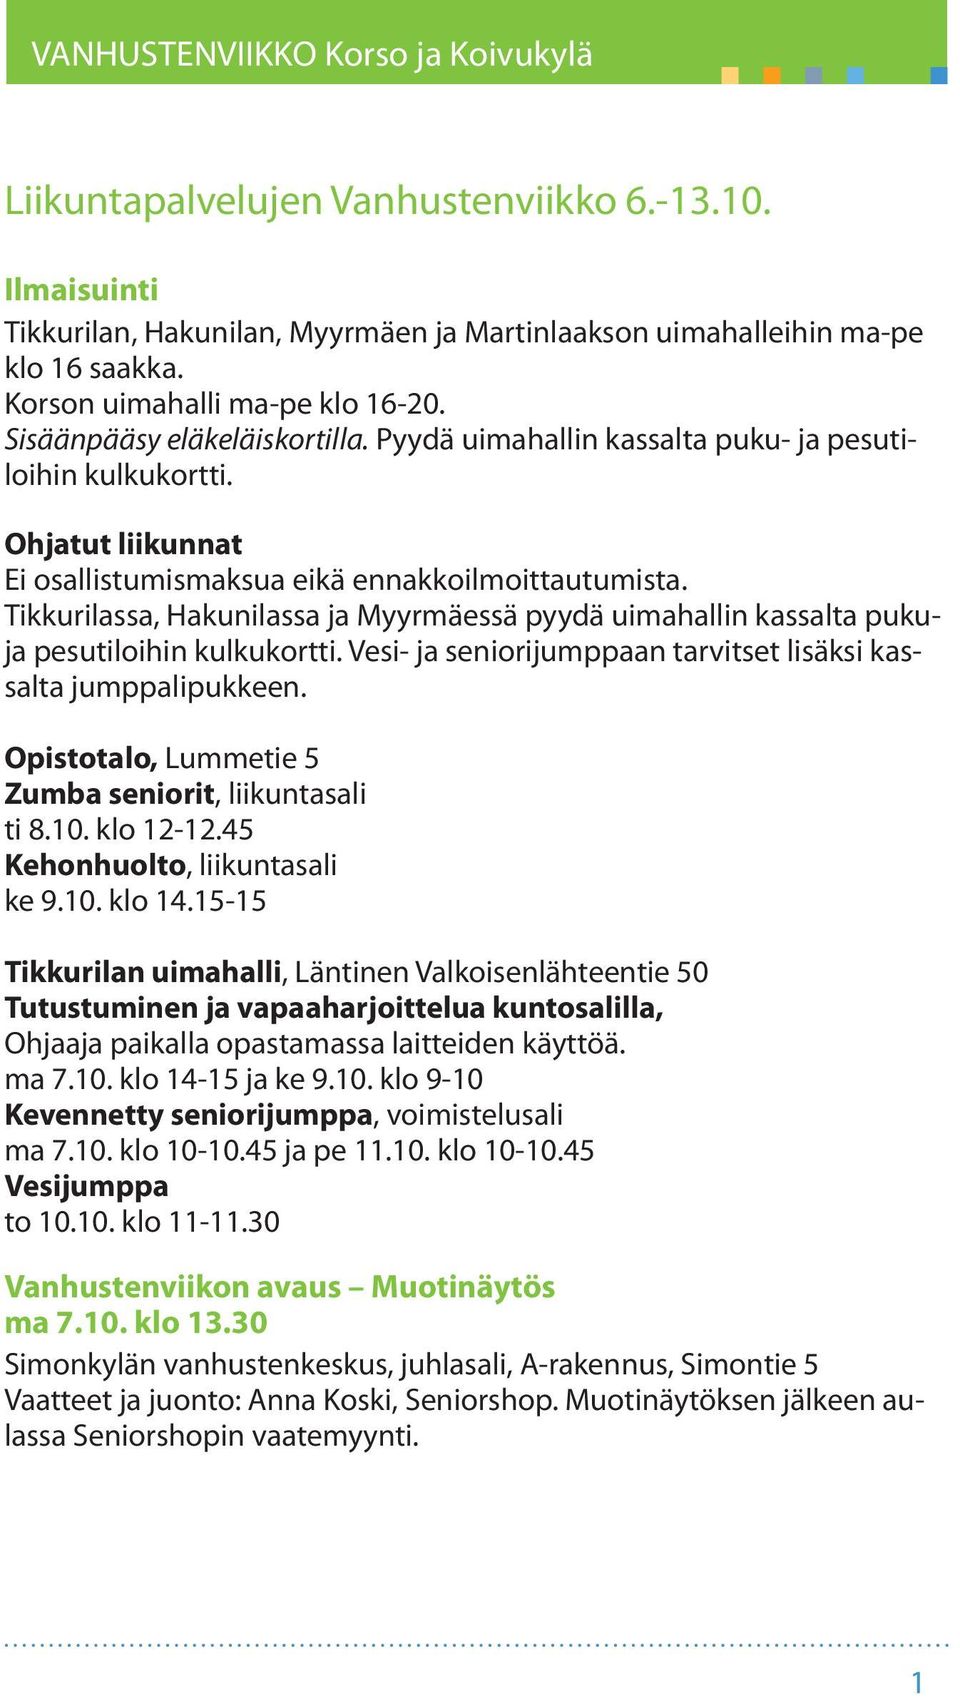 Tikkurilassa, Hakunilassa ja Myyrmäessä pyydä uimahallin kassalta pukuja pesutiloihin kulkukortti. Vesi- ja seniorijumppaan tarvitset lisäksi kassalta jumppalipukkeen.